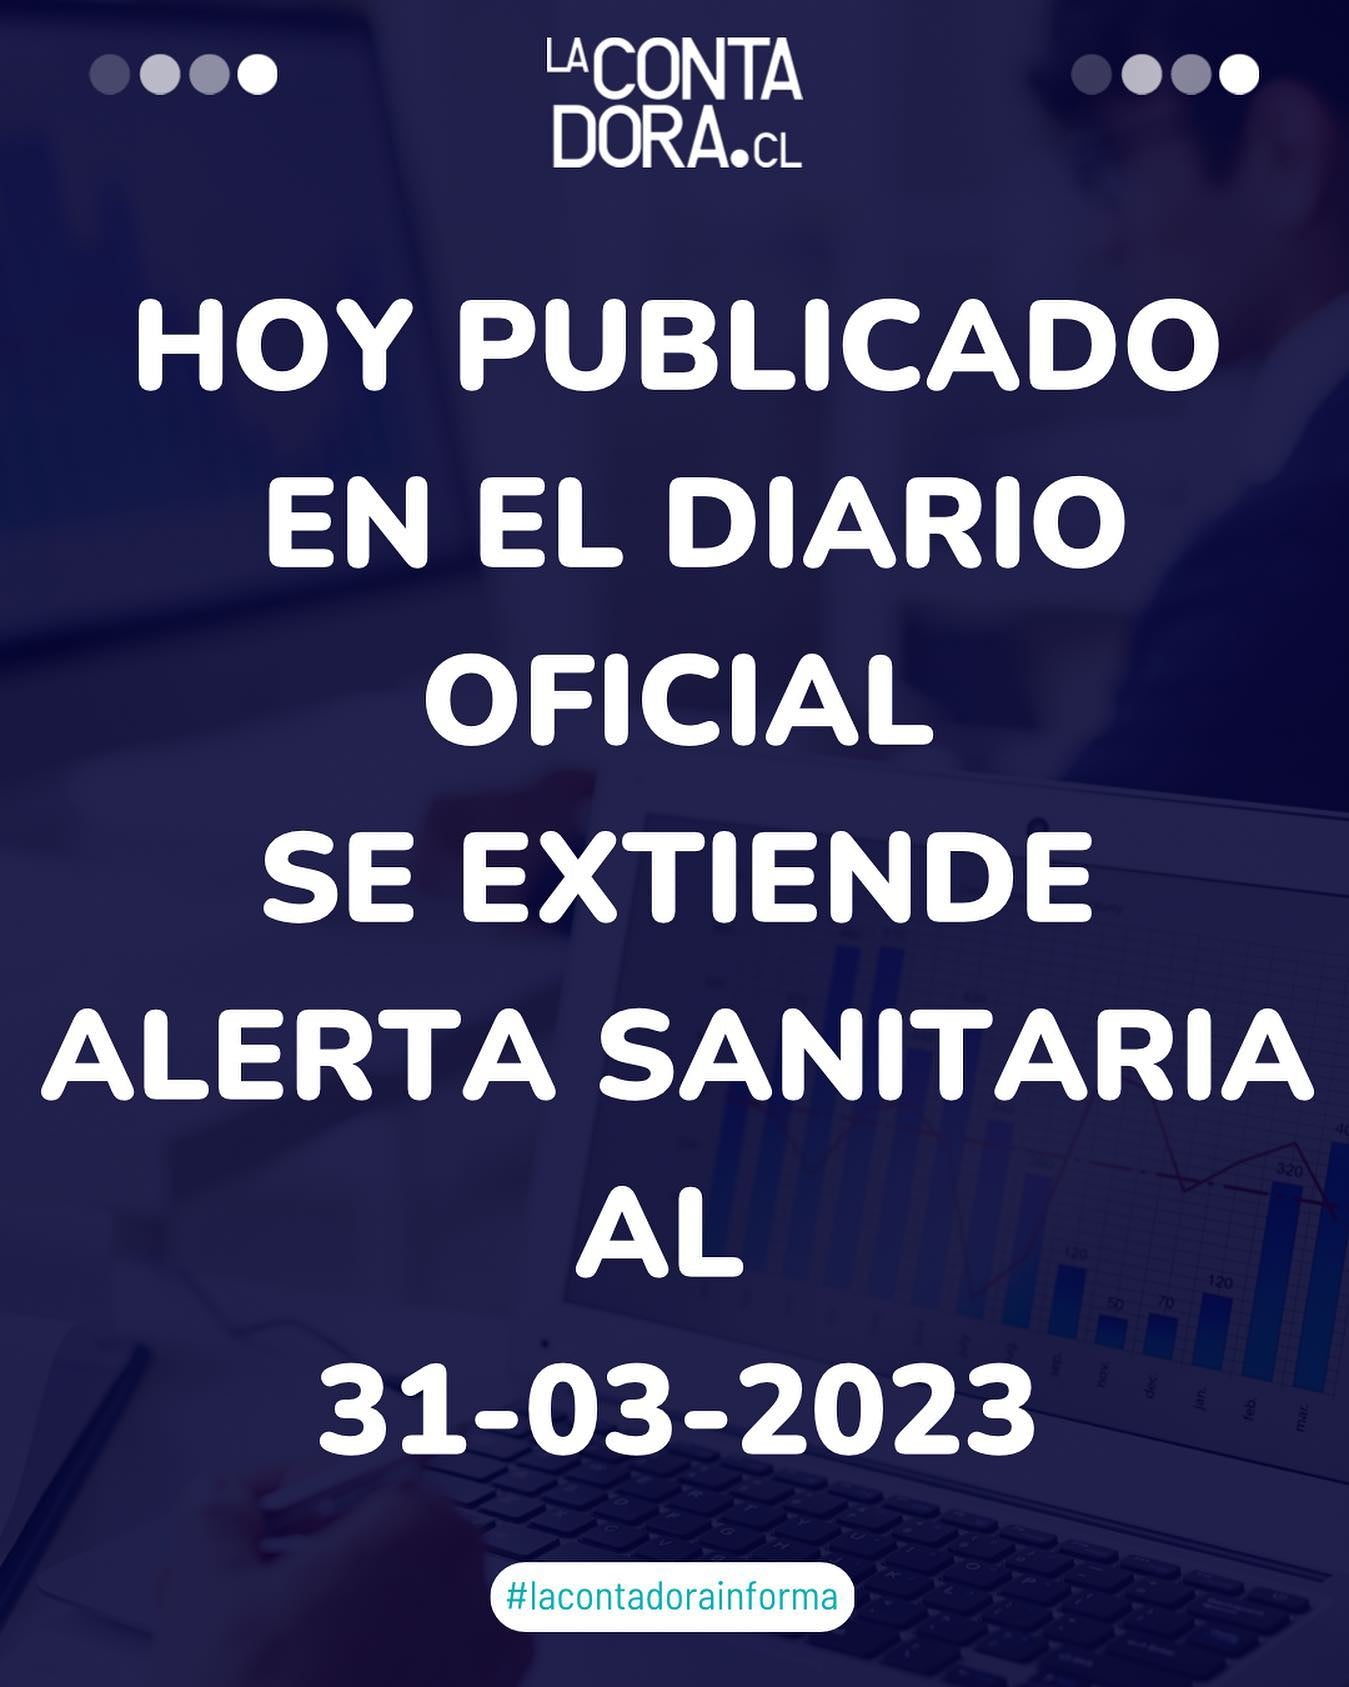 PUBLICADO EN EL DIARIO OFICIAL SE EXTIENDE ALERTA SANITARIA AL 21-03-2023